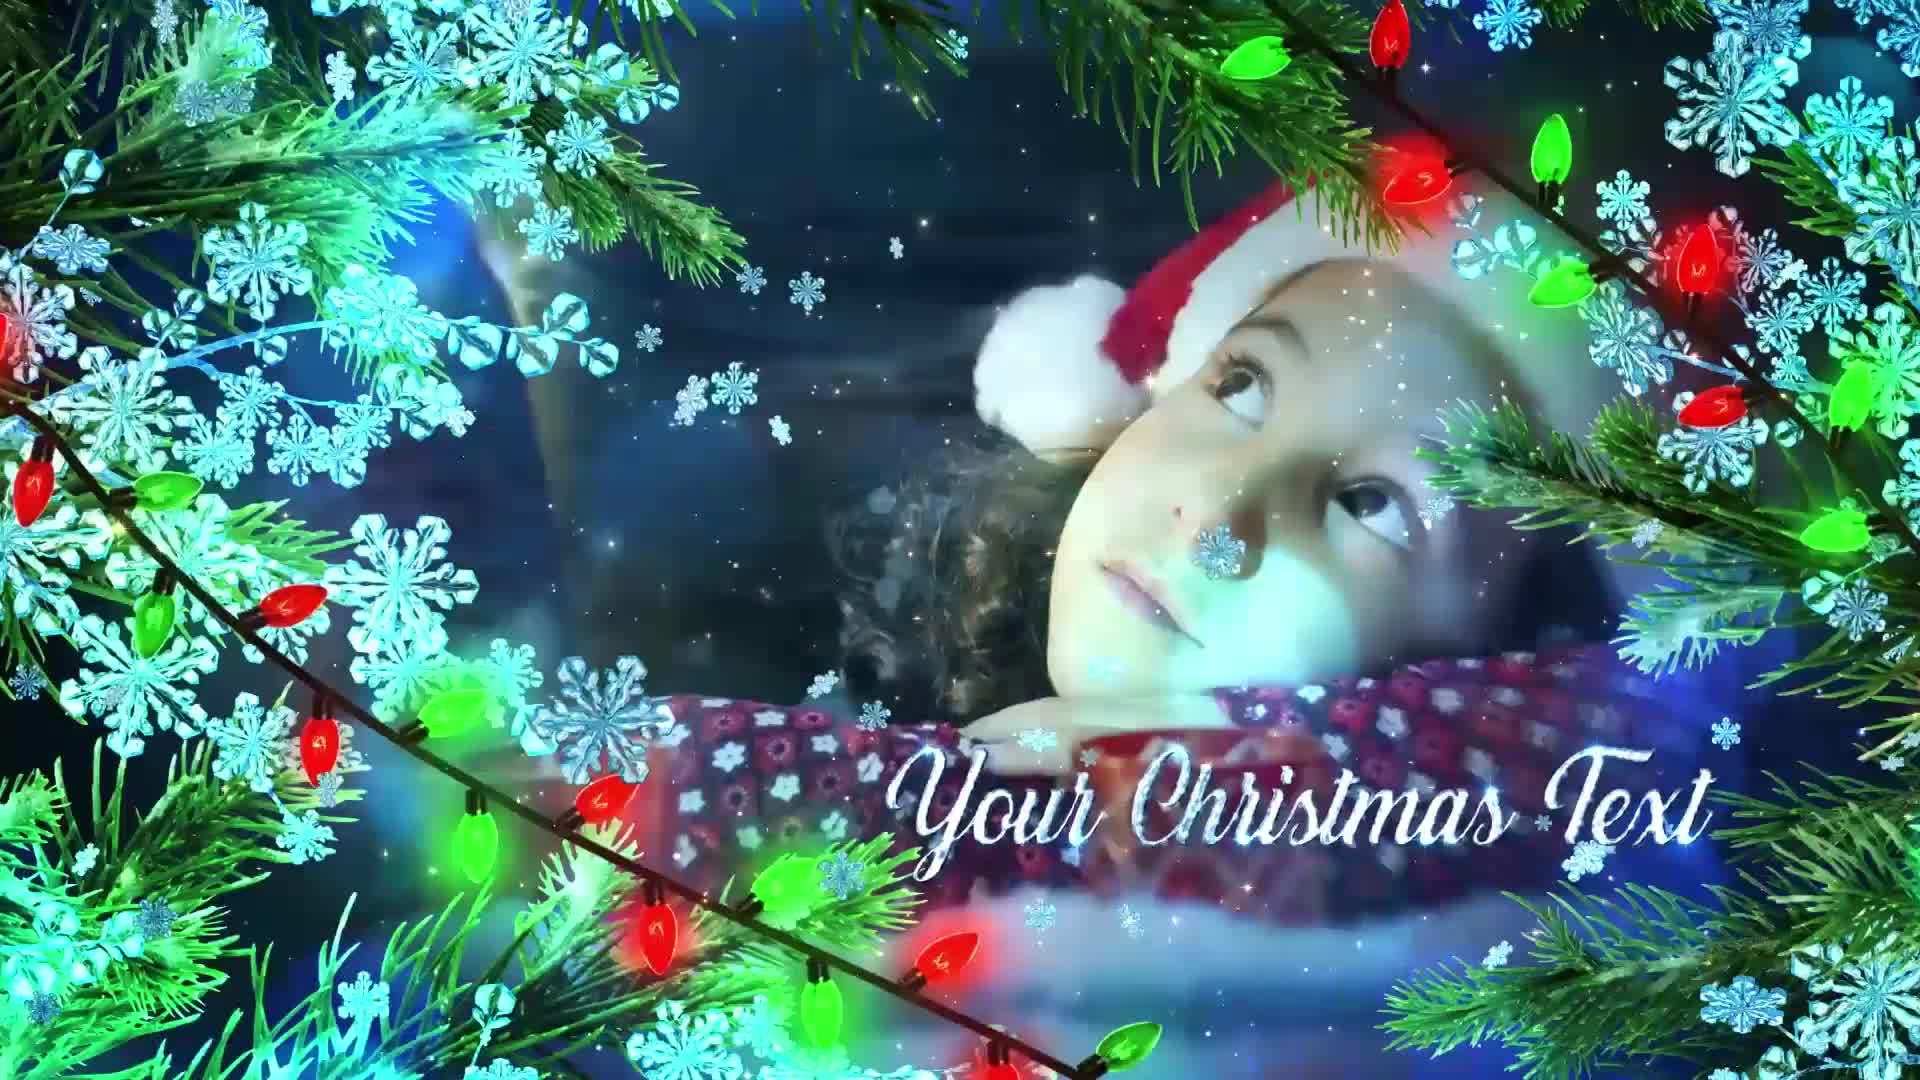 Winter Christmas Promo Premiere Pro Videohive 29575814 Premiere Pro Image 8